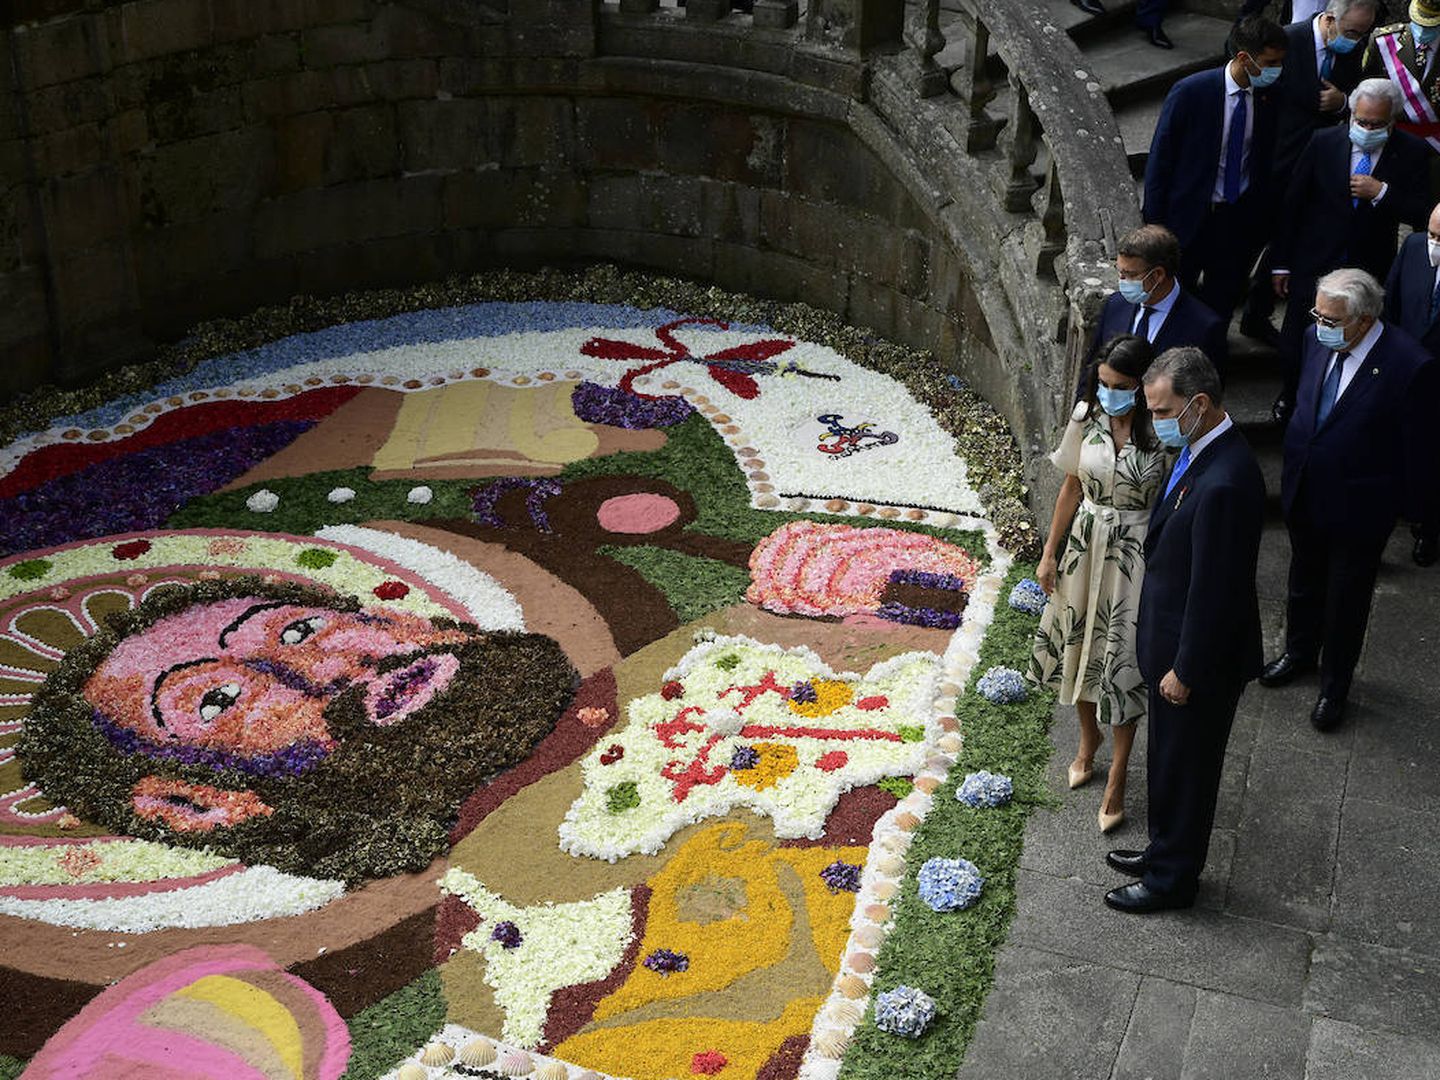 Los Reyes observan una de las alfombras florales. (Limited Pictures)